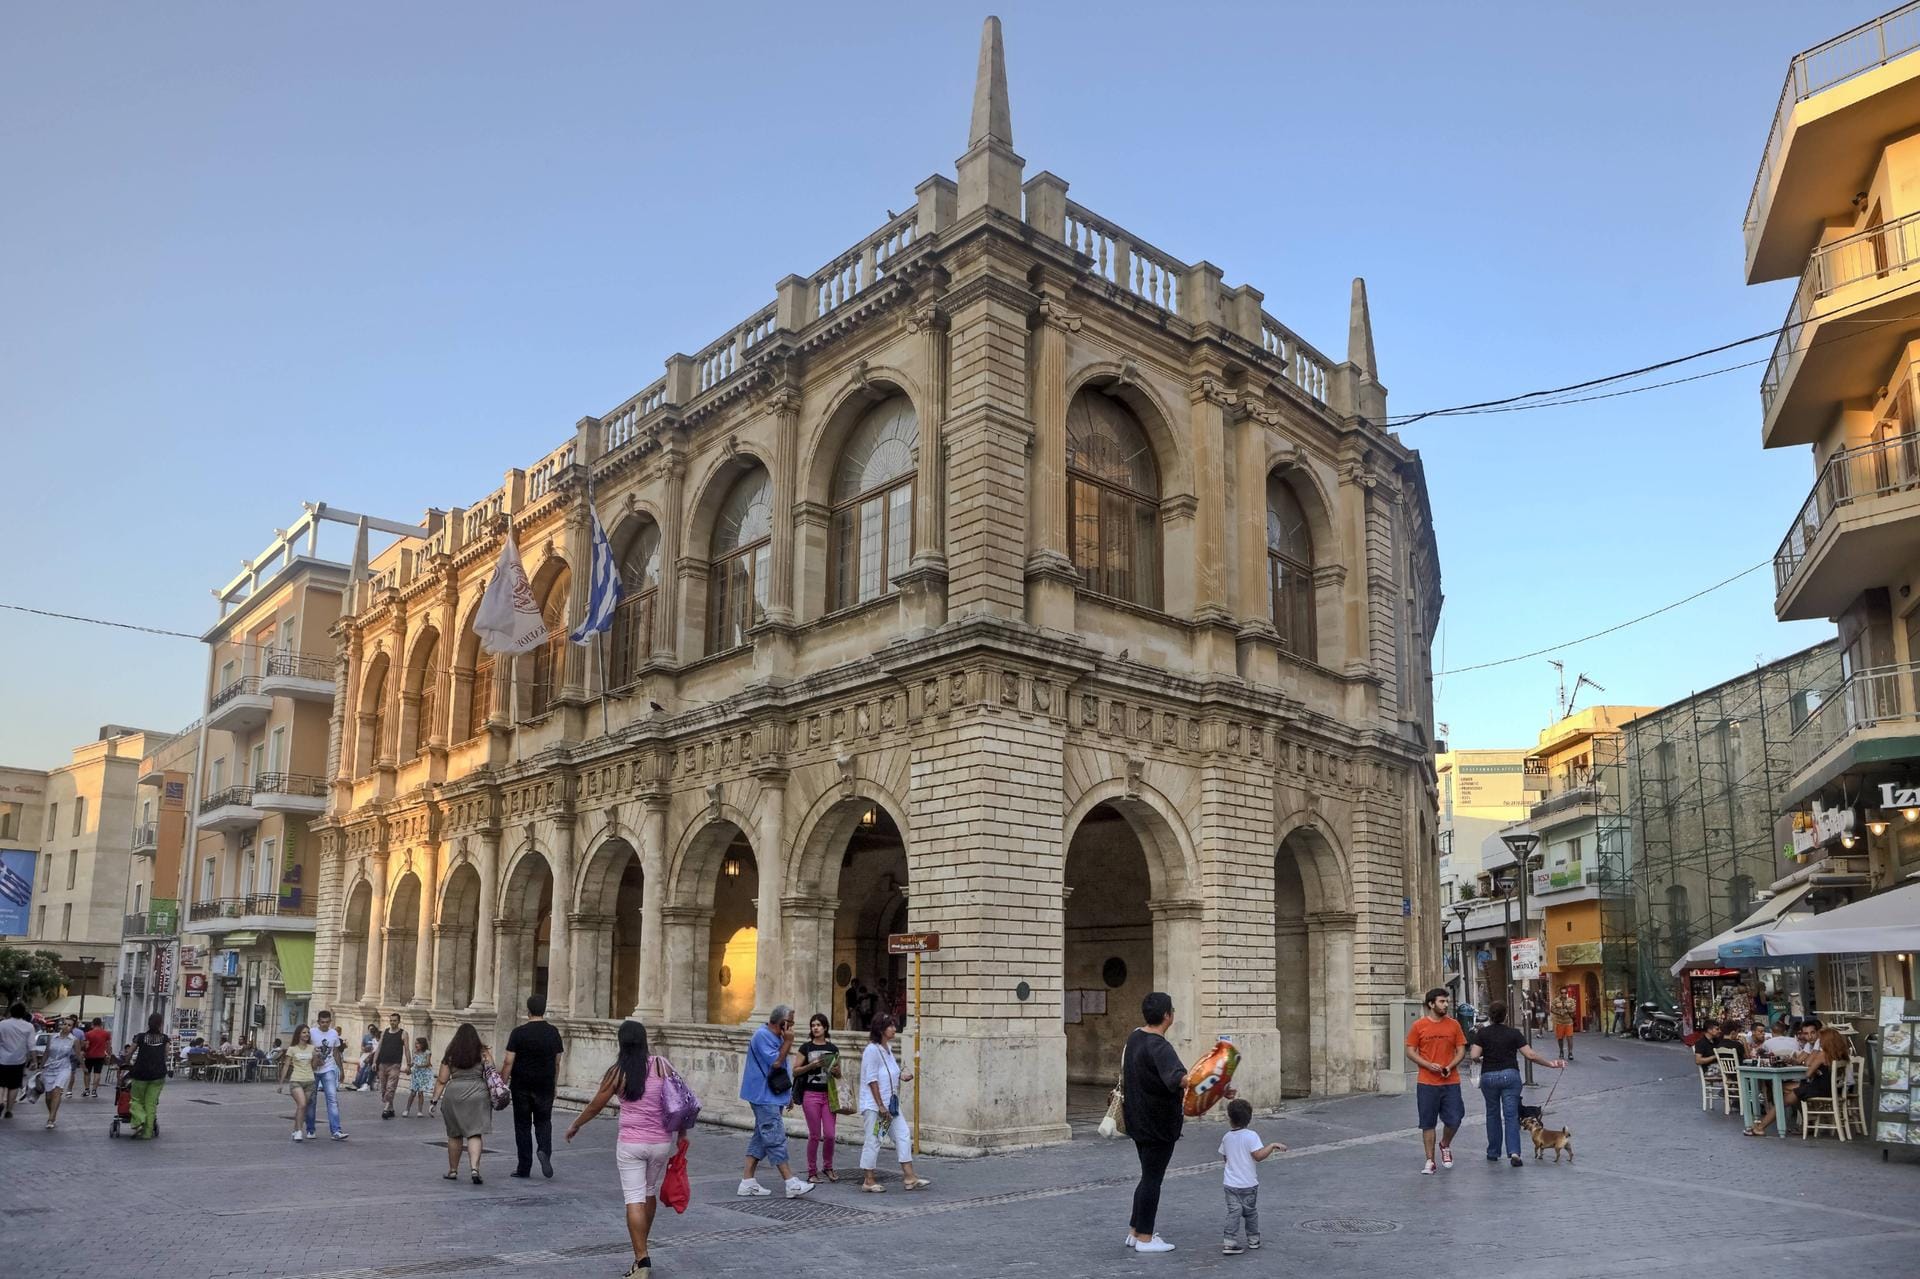 Venezianische Loggia in Heraklion: In Kretas Hauptstadt erwarten Sie zahlreiche historische Bauwerke, die von der spannenden Historie der Region zeugen.